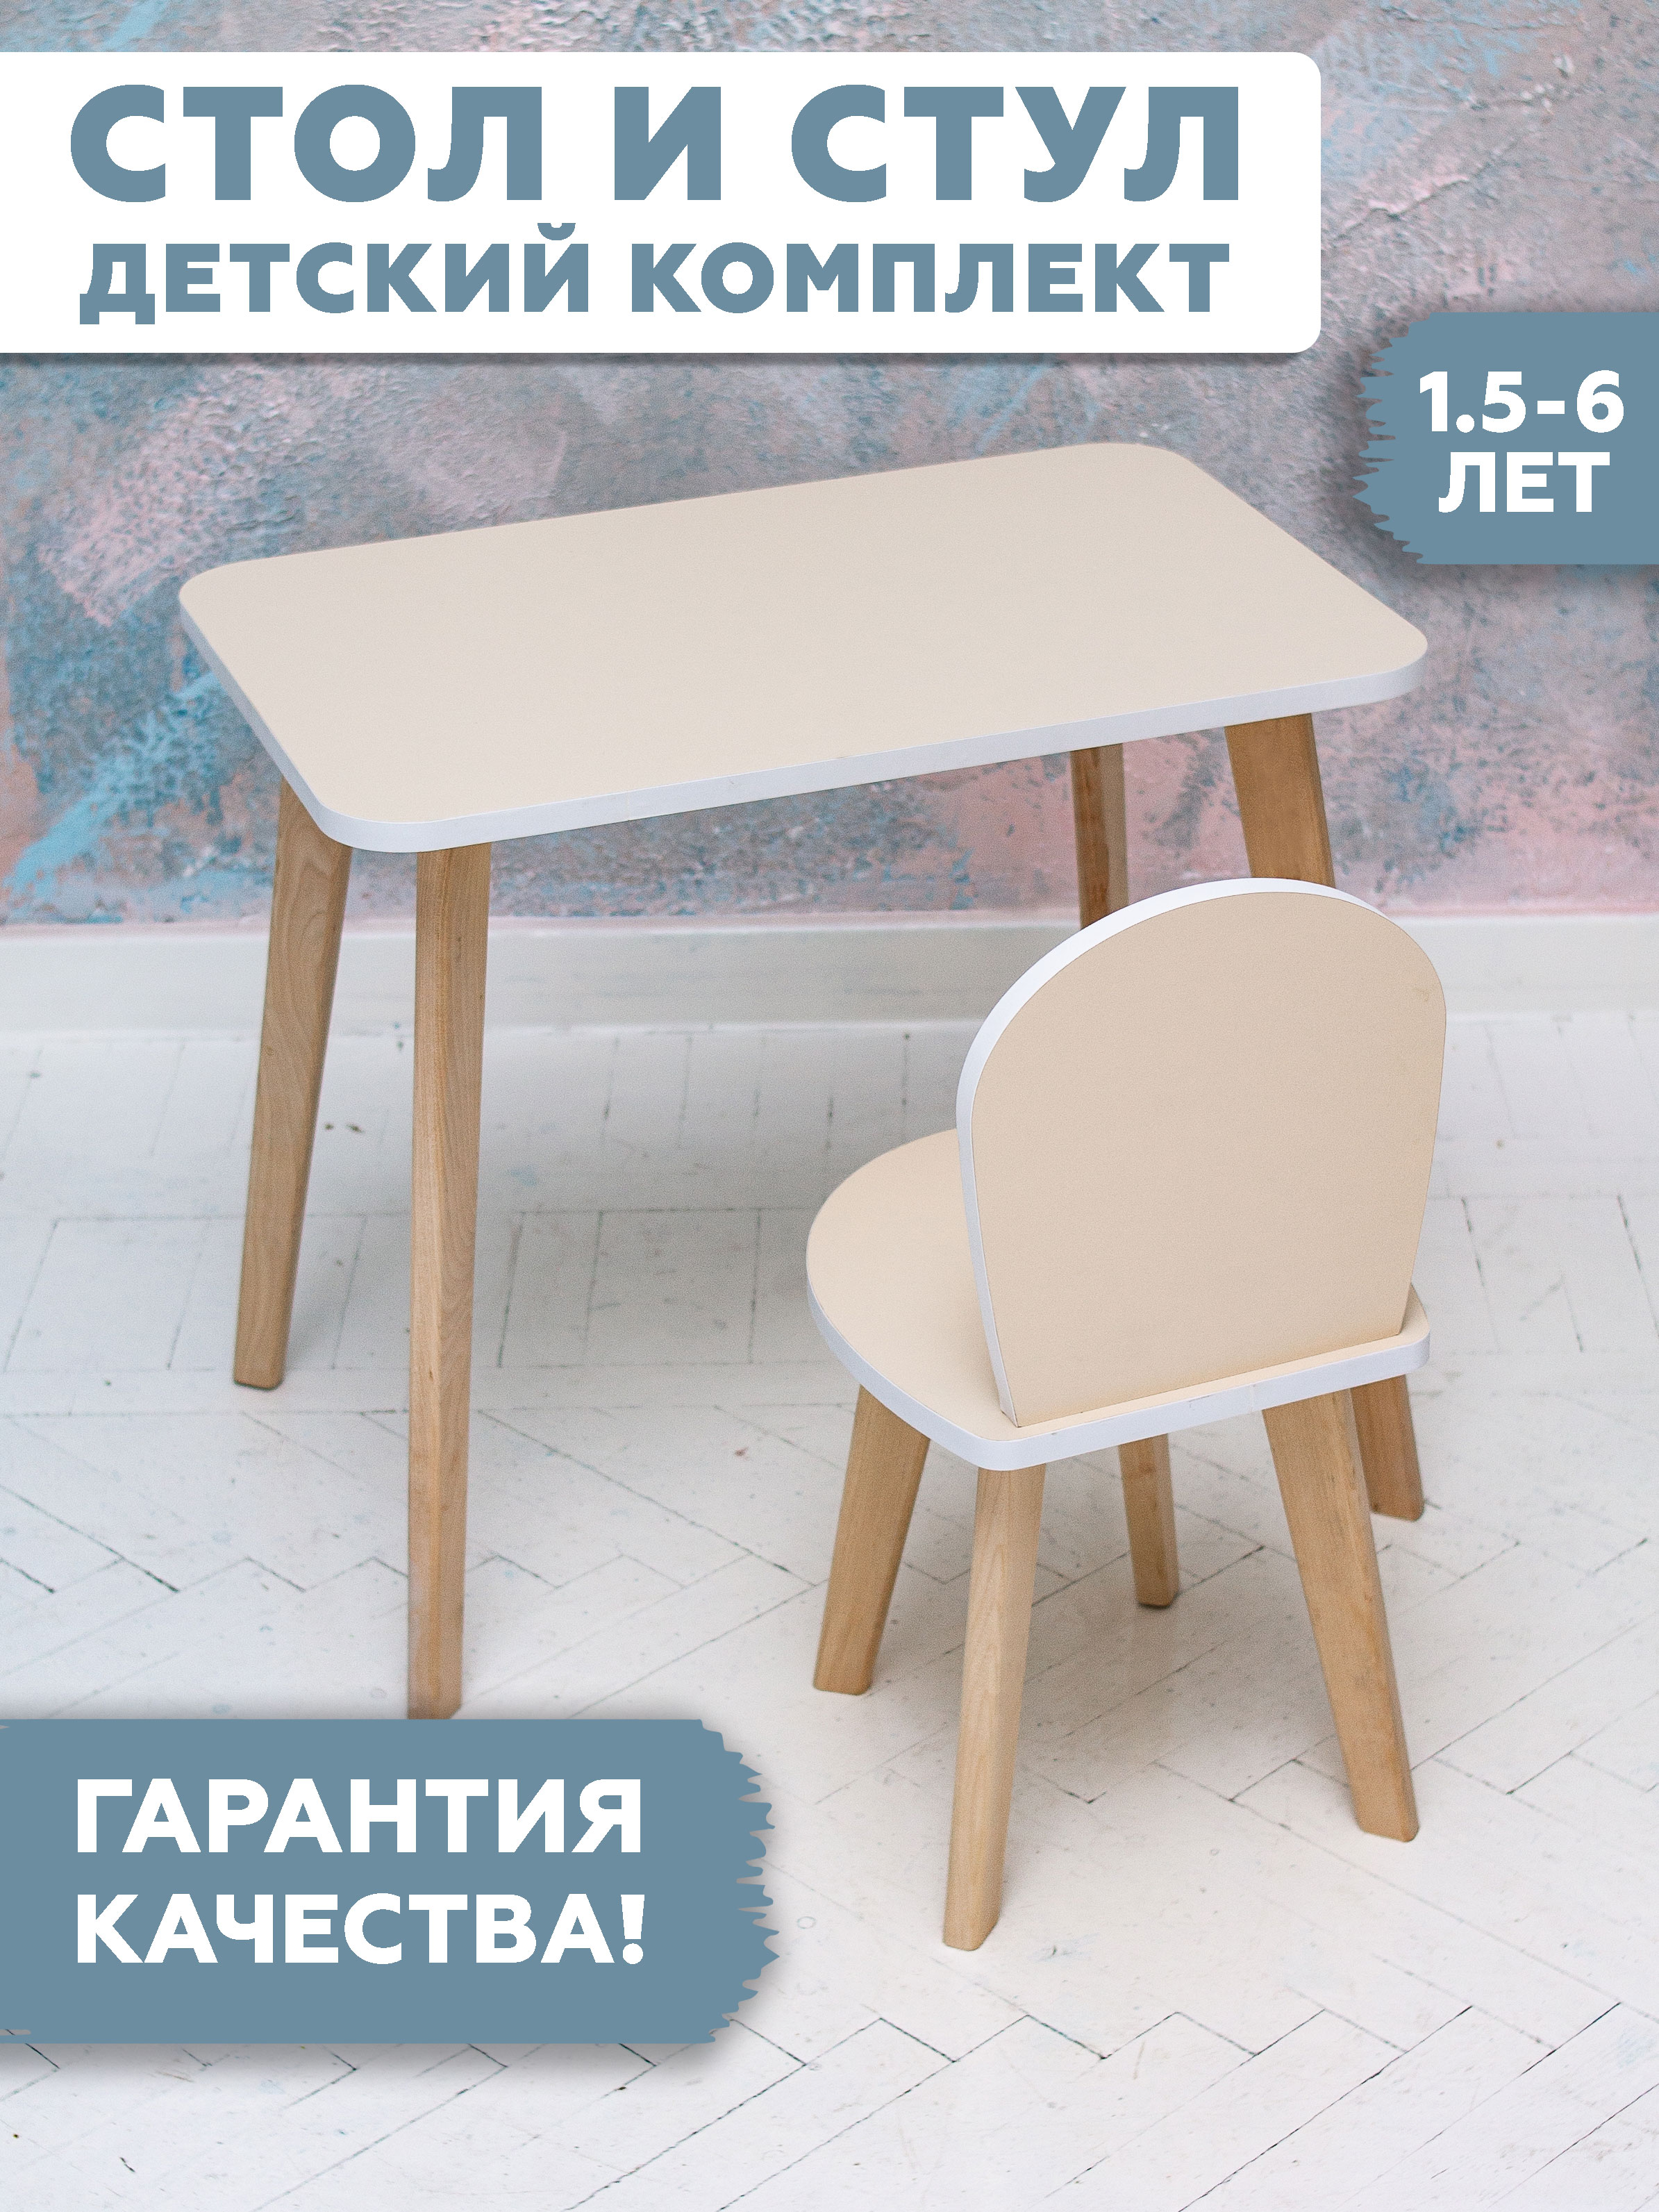 Комплект детской мебели RuLes столик и стульчик симба бежевый стандарт.